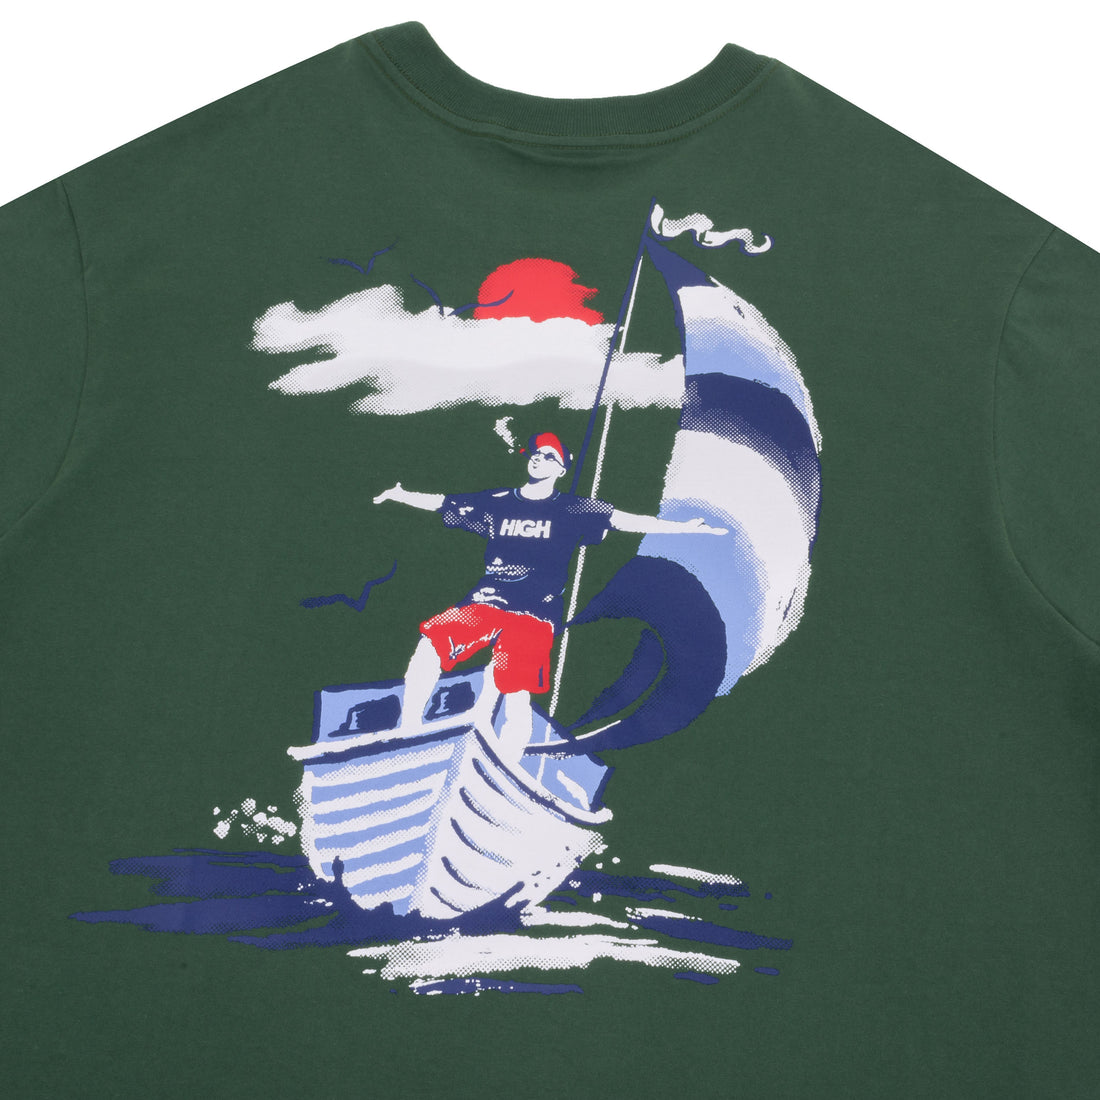 Camiseta High x Nautica Tee Vivant Green